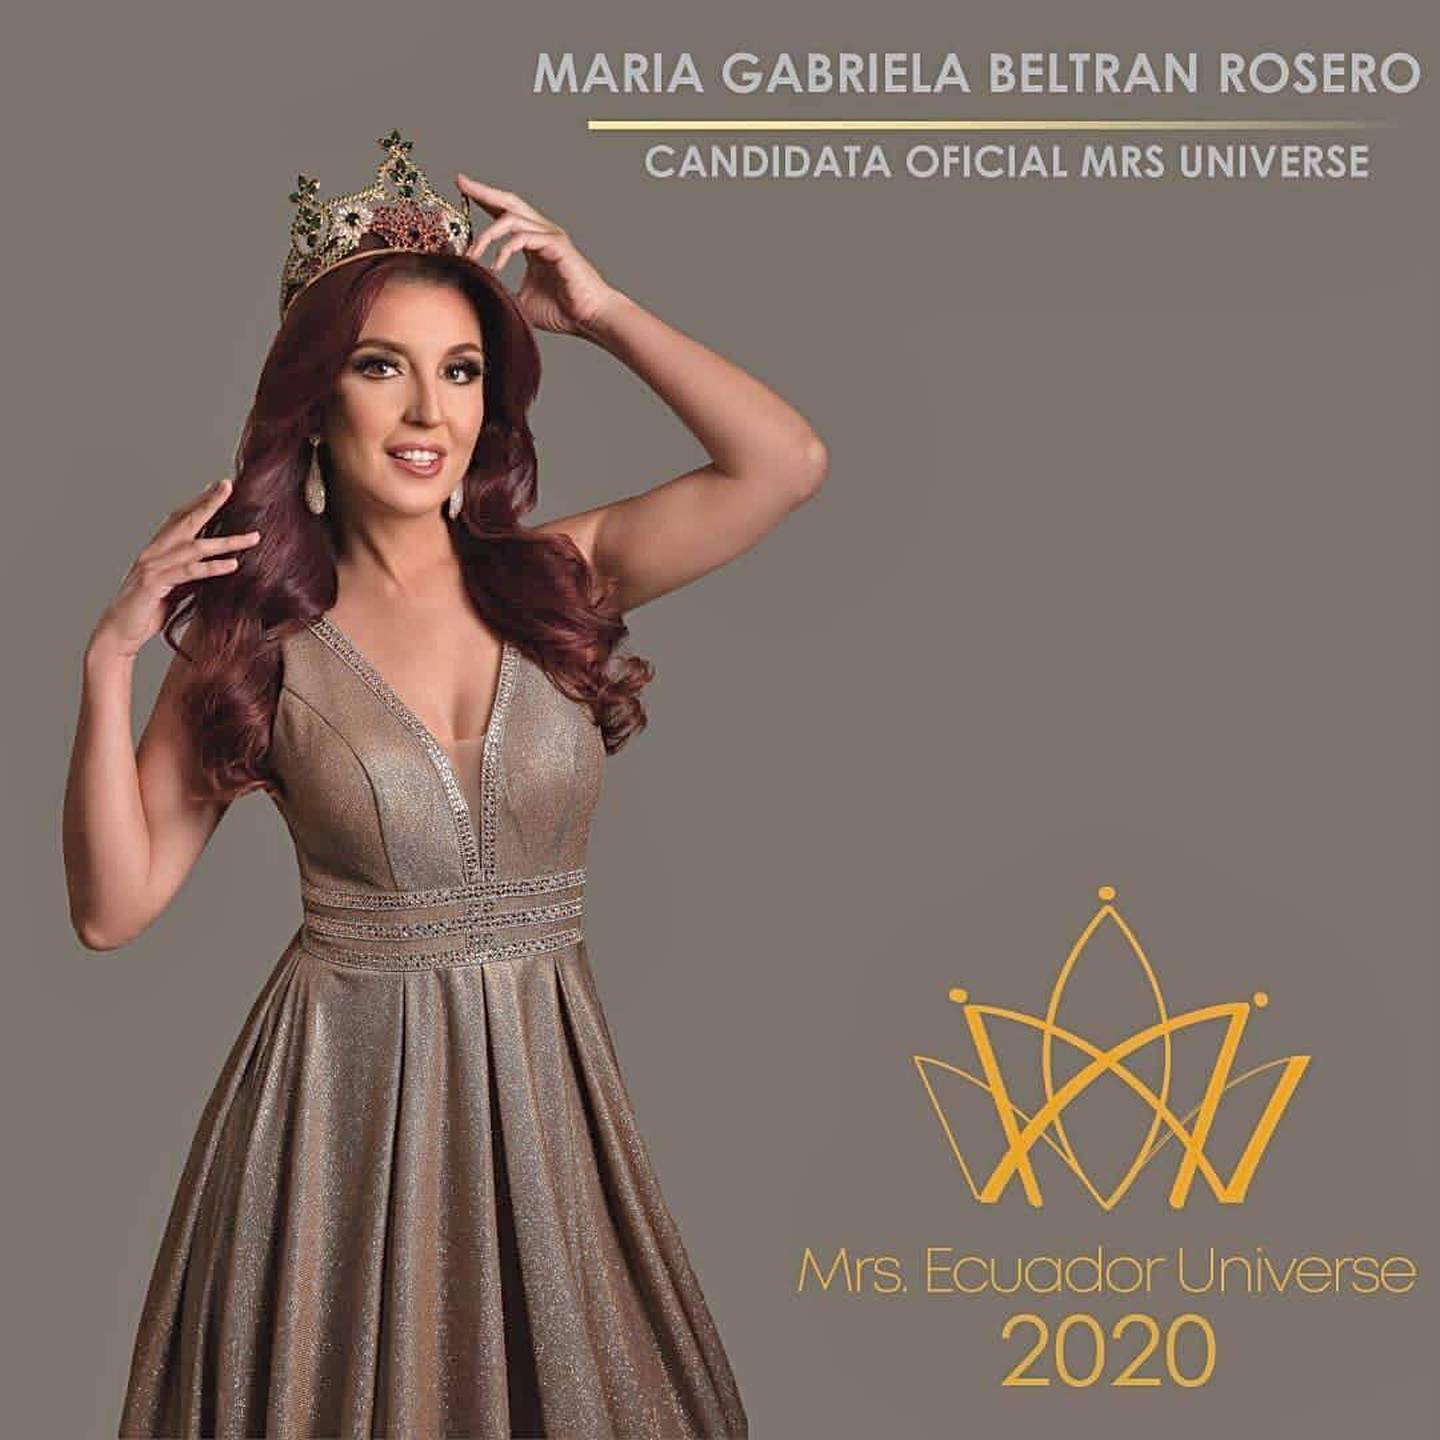 Mrs. Ecuador Universe se elegirá de forma virtual actualmente es María